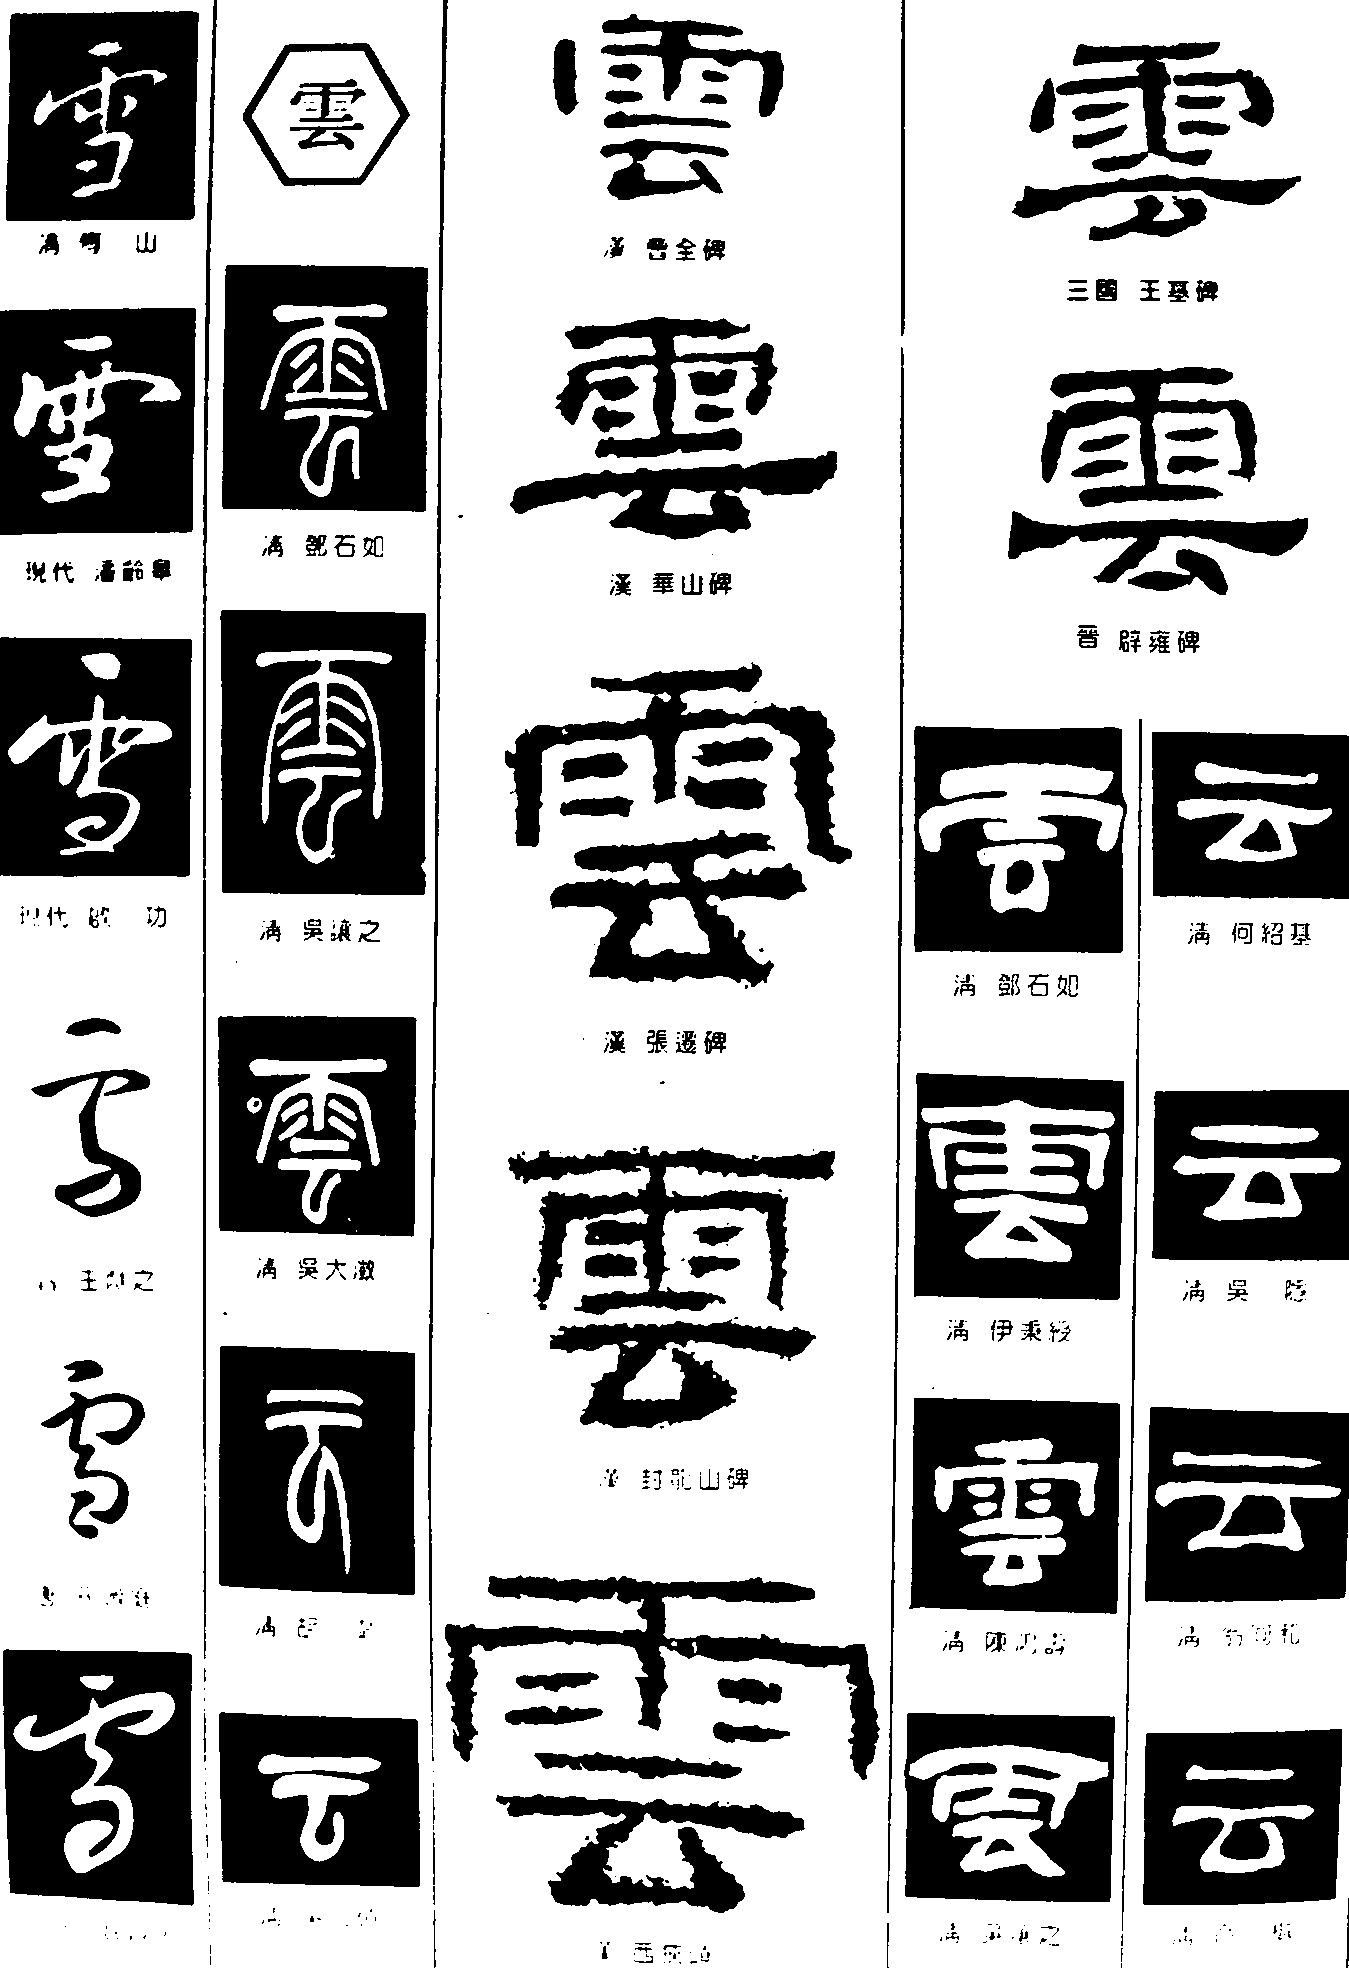 雪雲_书法字体_字体设计作品-中国字体设计网_ziti.cndesign.com